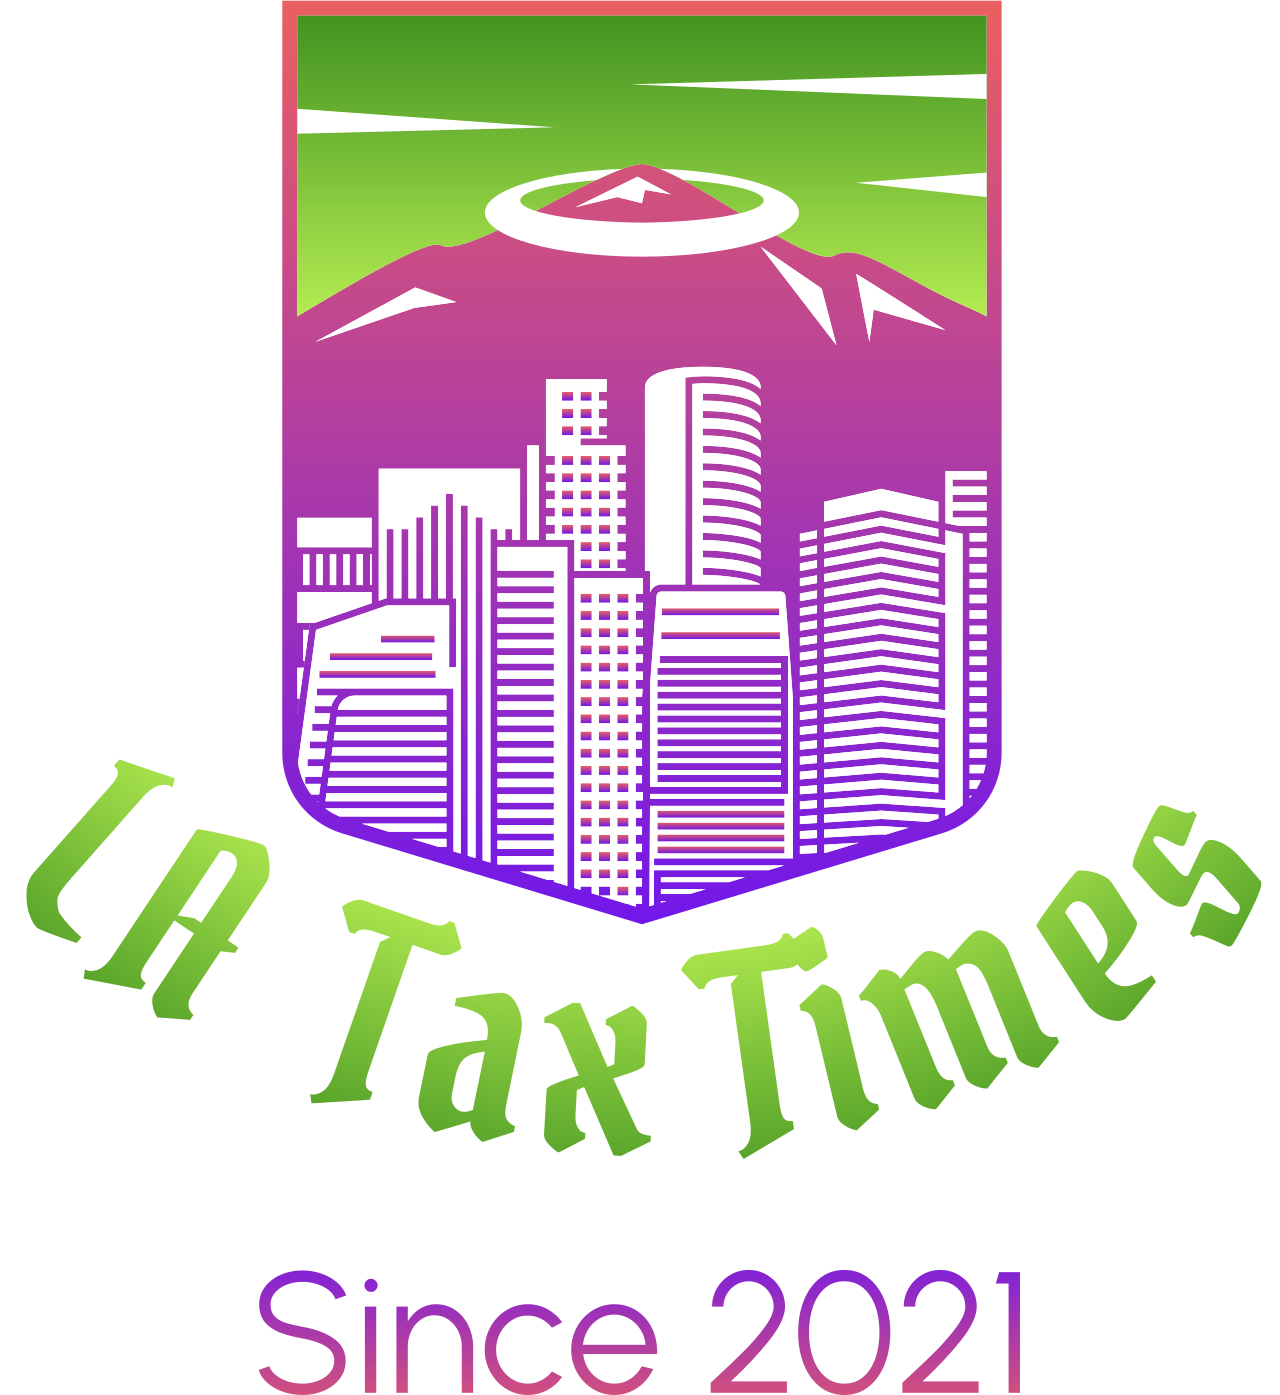 LA  Tax Times's web page